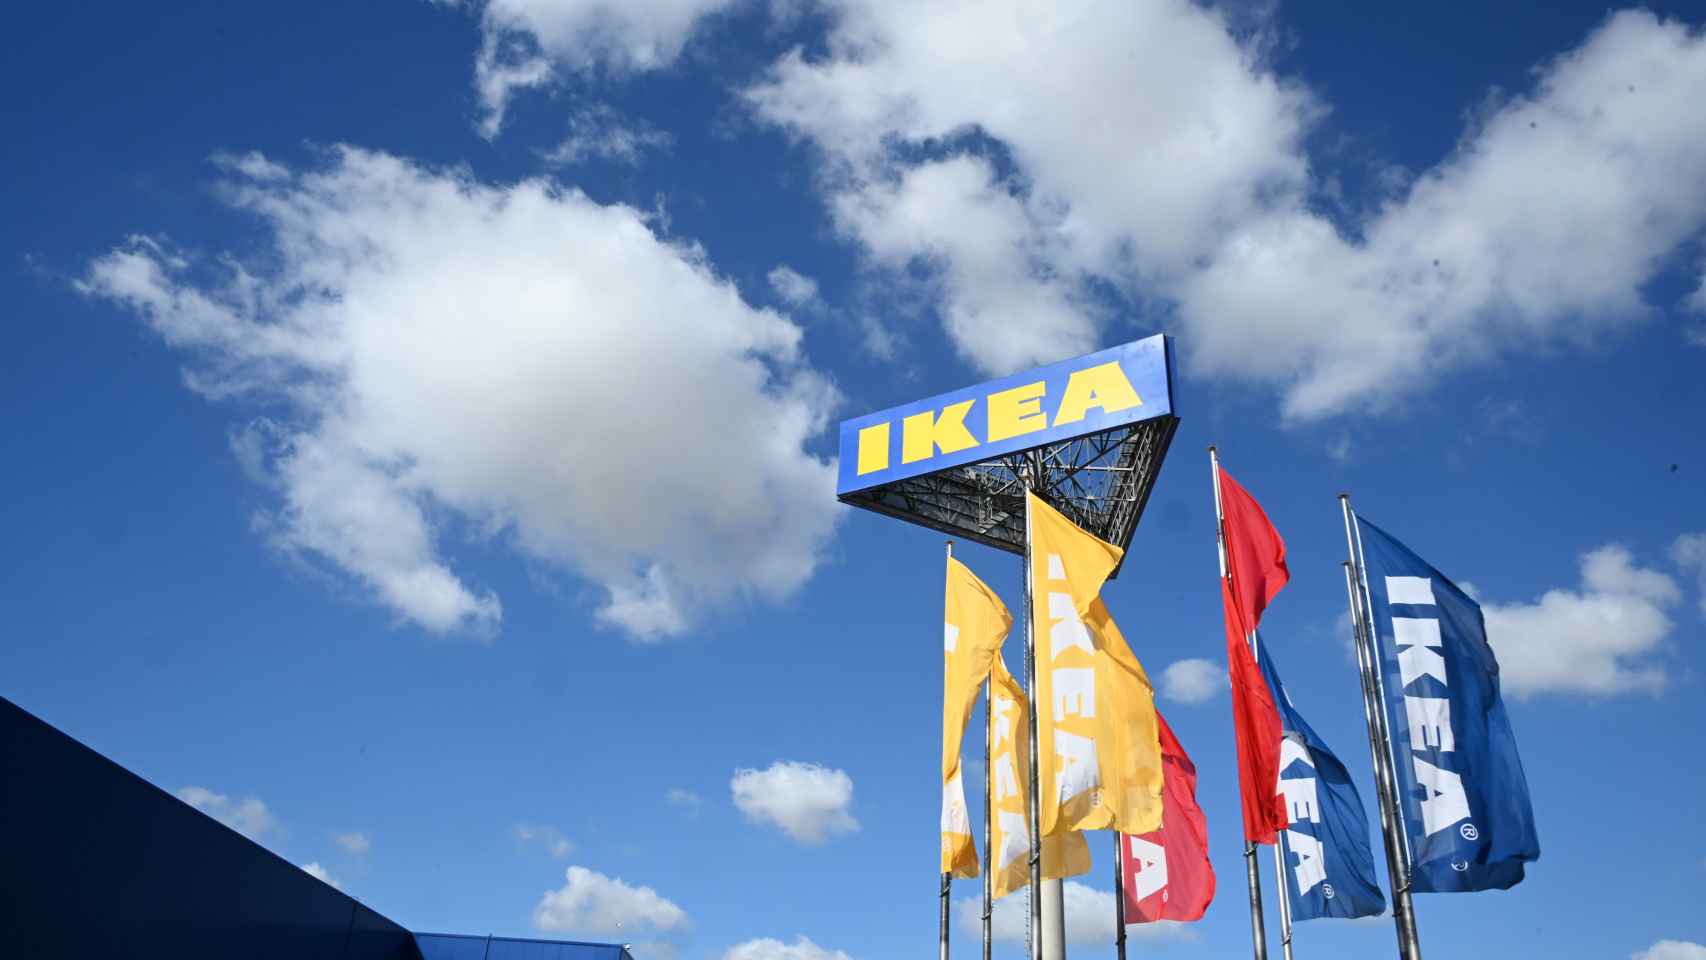 Banderas a la entrada de Ikea en Jerez de la Frontera